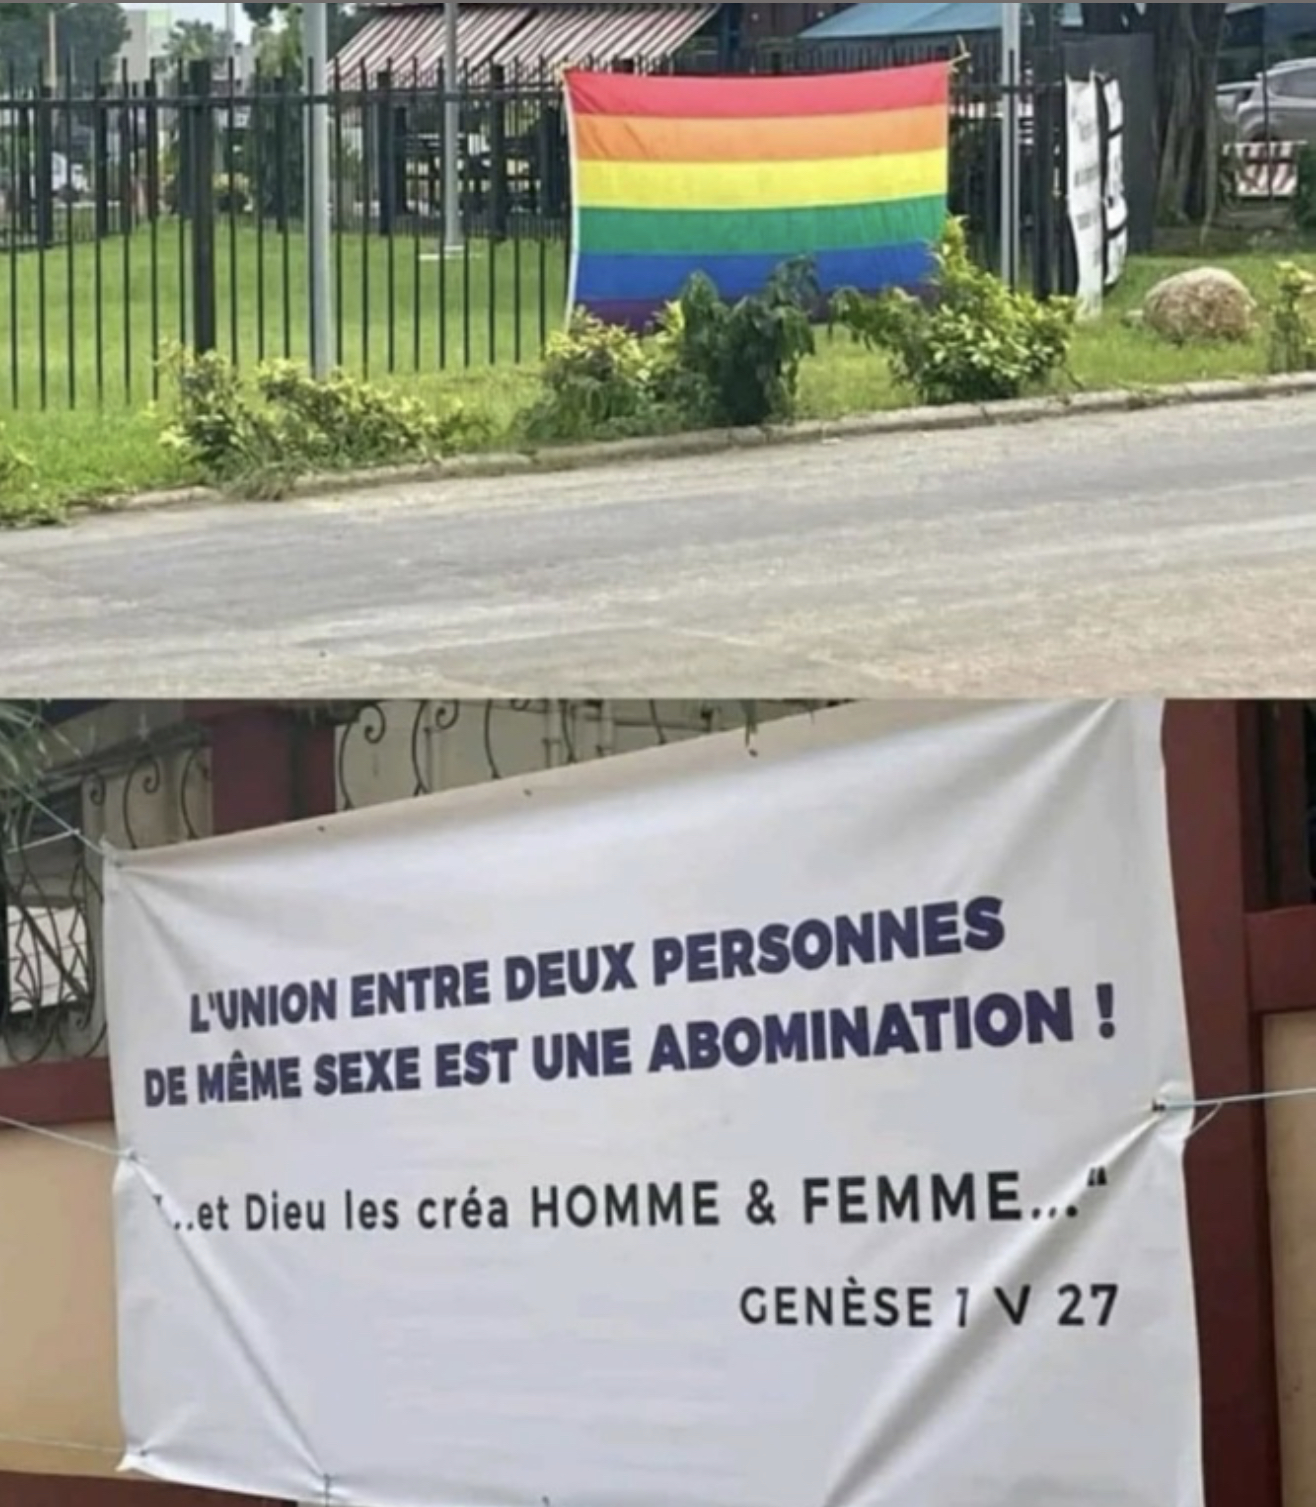 Le drapeau LGBT flotte à l'ambassade des USA en Côte d'Ivoire: promotion de l'homosexualité ou provocation?